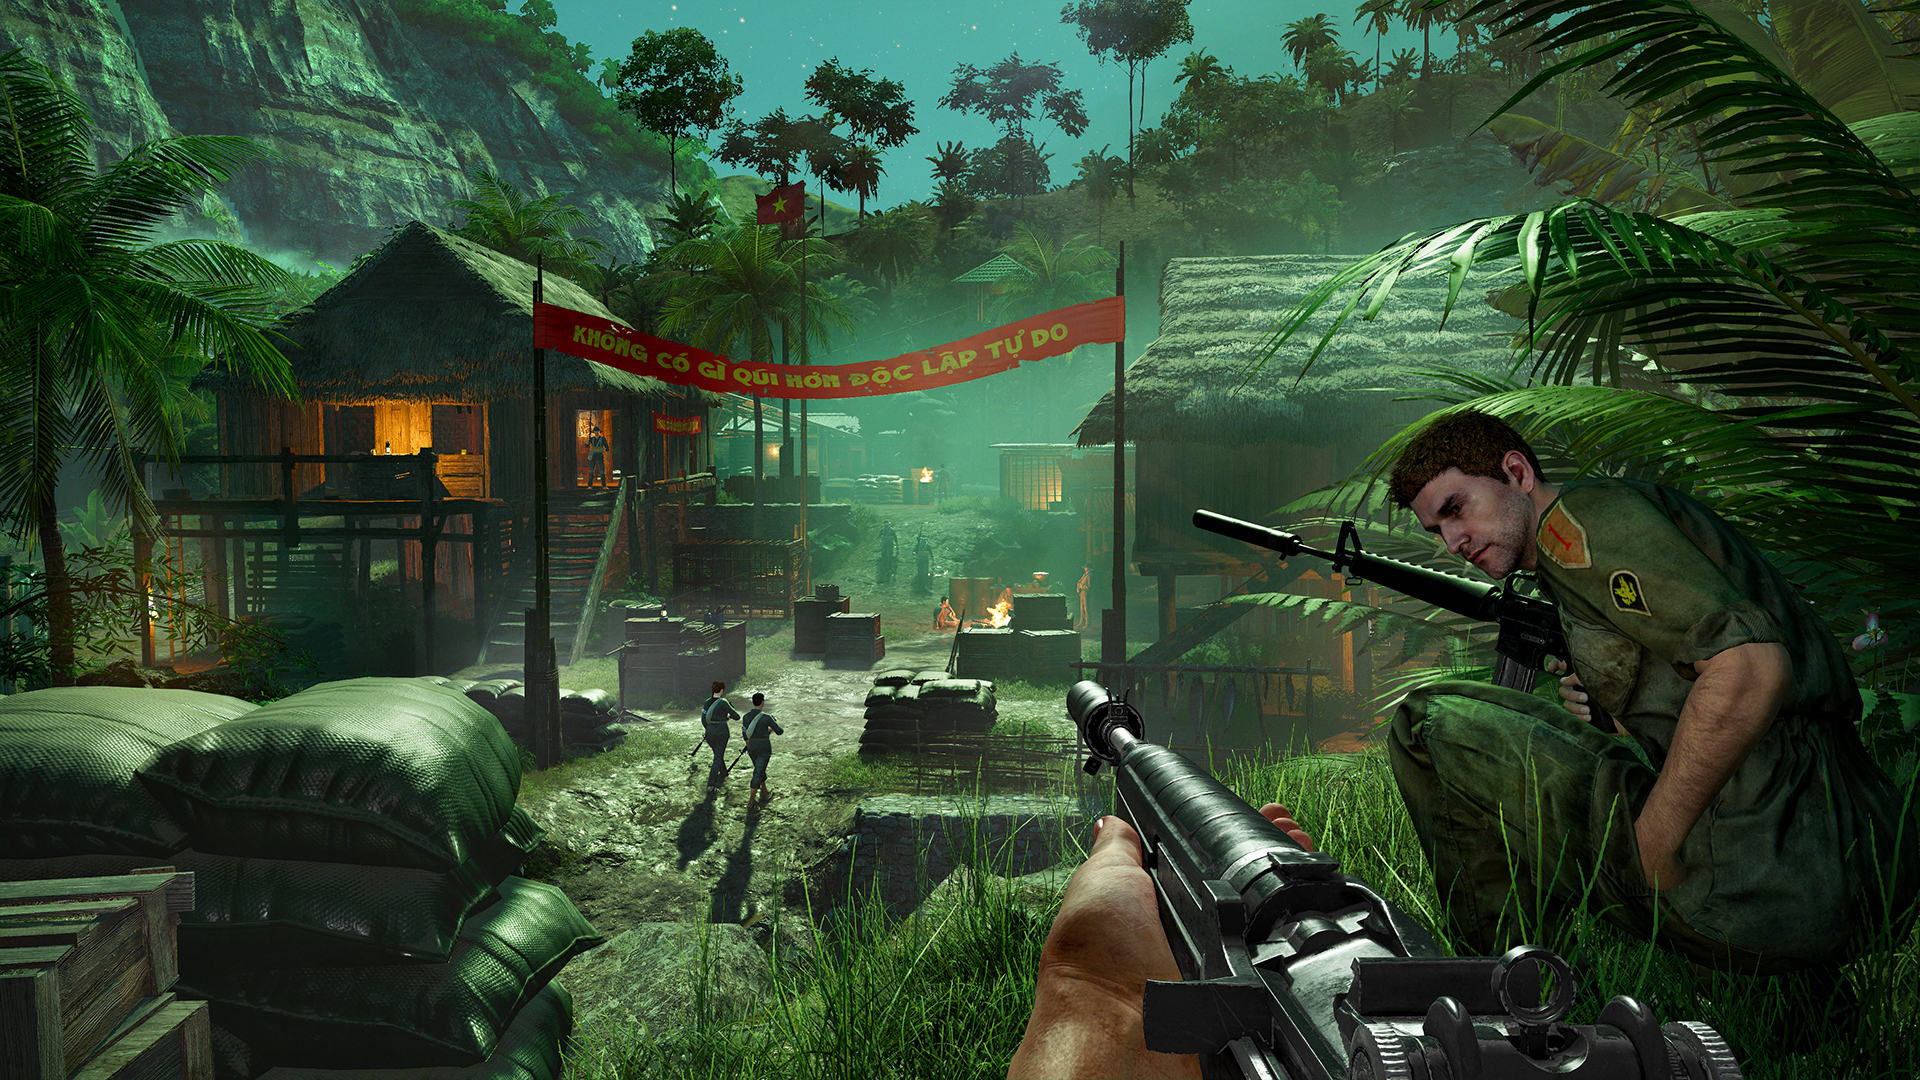 Far Cry 5 on Steam Deck 